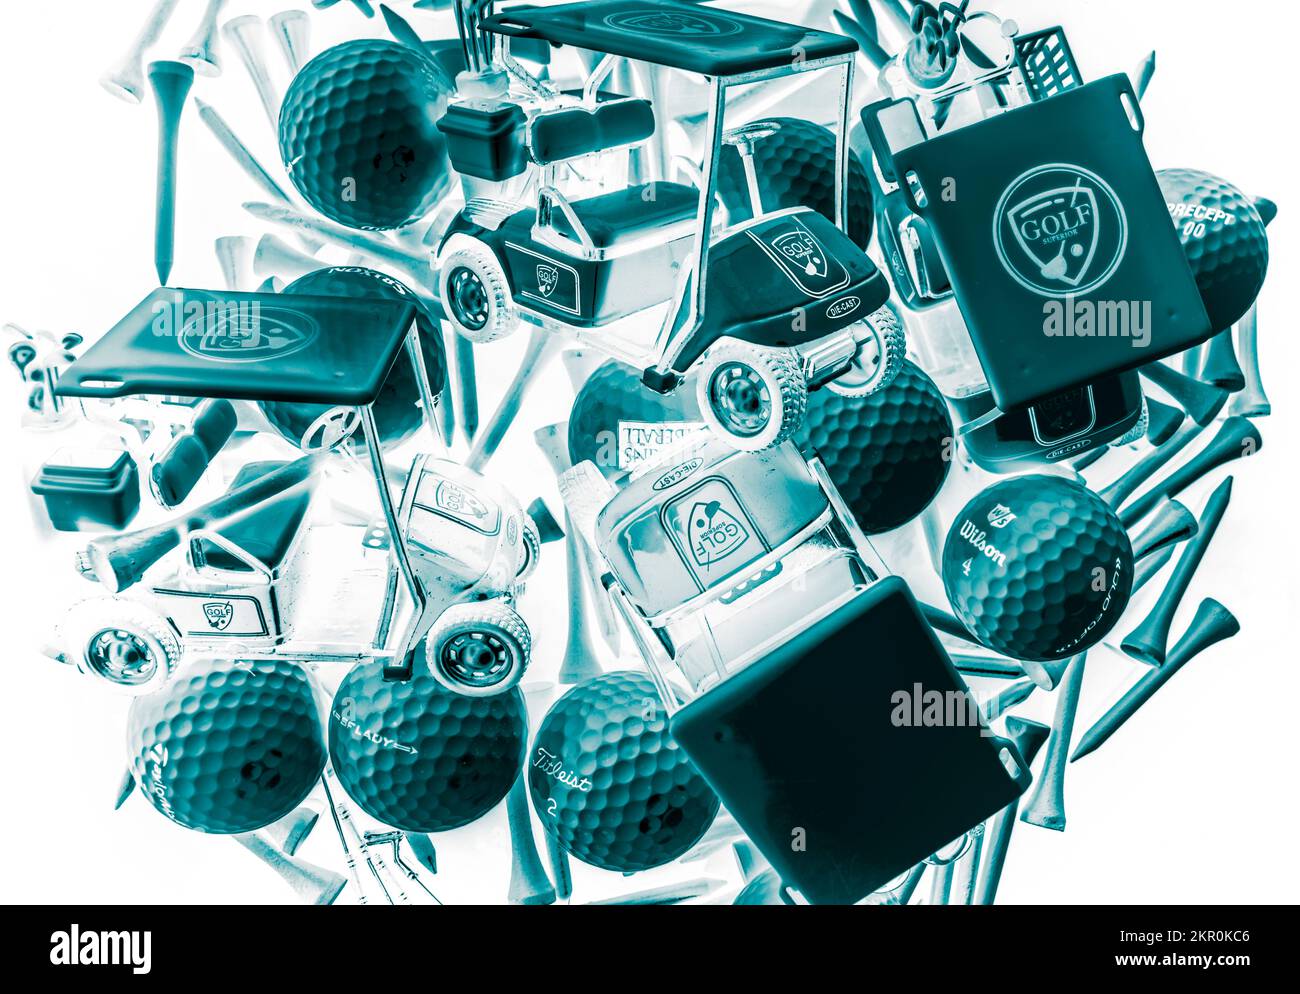 Spielerisches Sportdesign, das Abschläge und Golfturniere in festmachen soll Zusammenfassung Stockfoto